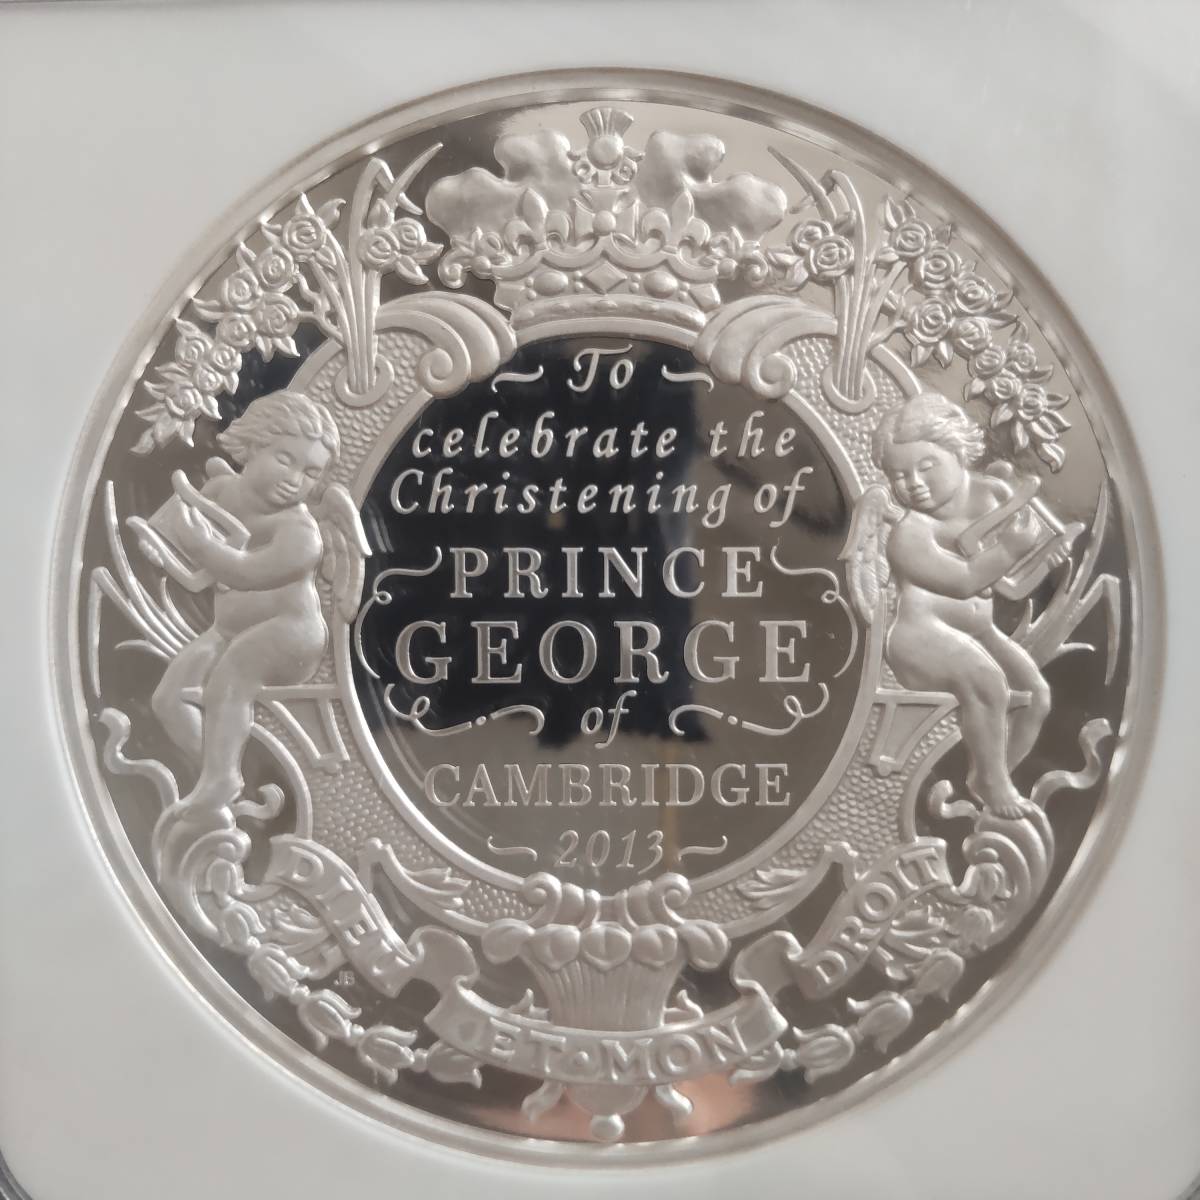 【稀少・最高鑑定】2013年 イギリス 英国ジョージ王子誕生洗礼記念 大型 銀貨 NGC PF70 ウルトラカメオ 500ポンド 1キロ モダンコイン _画像1